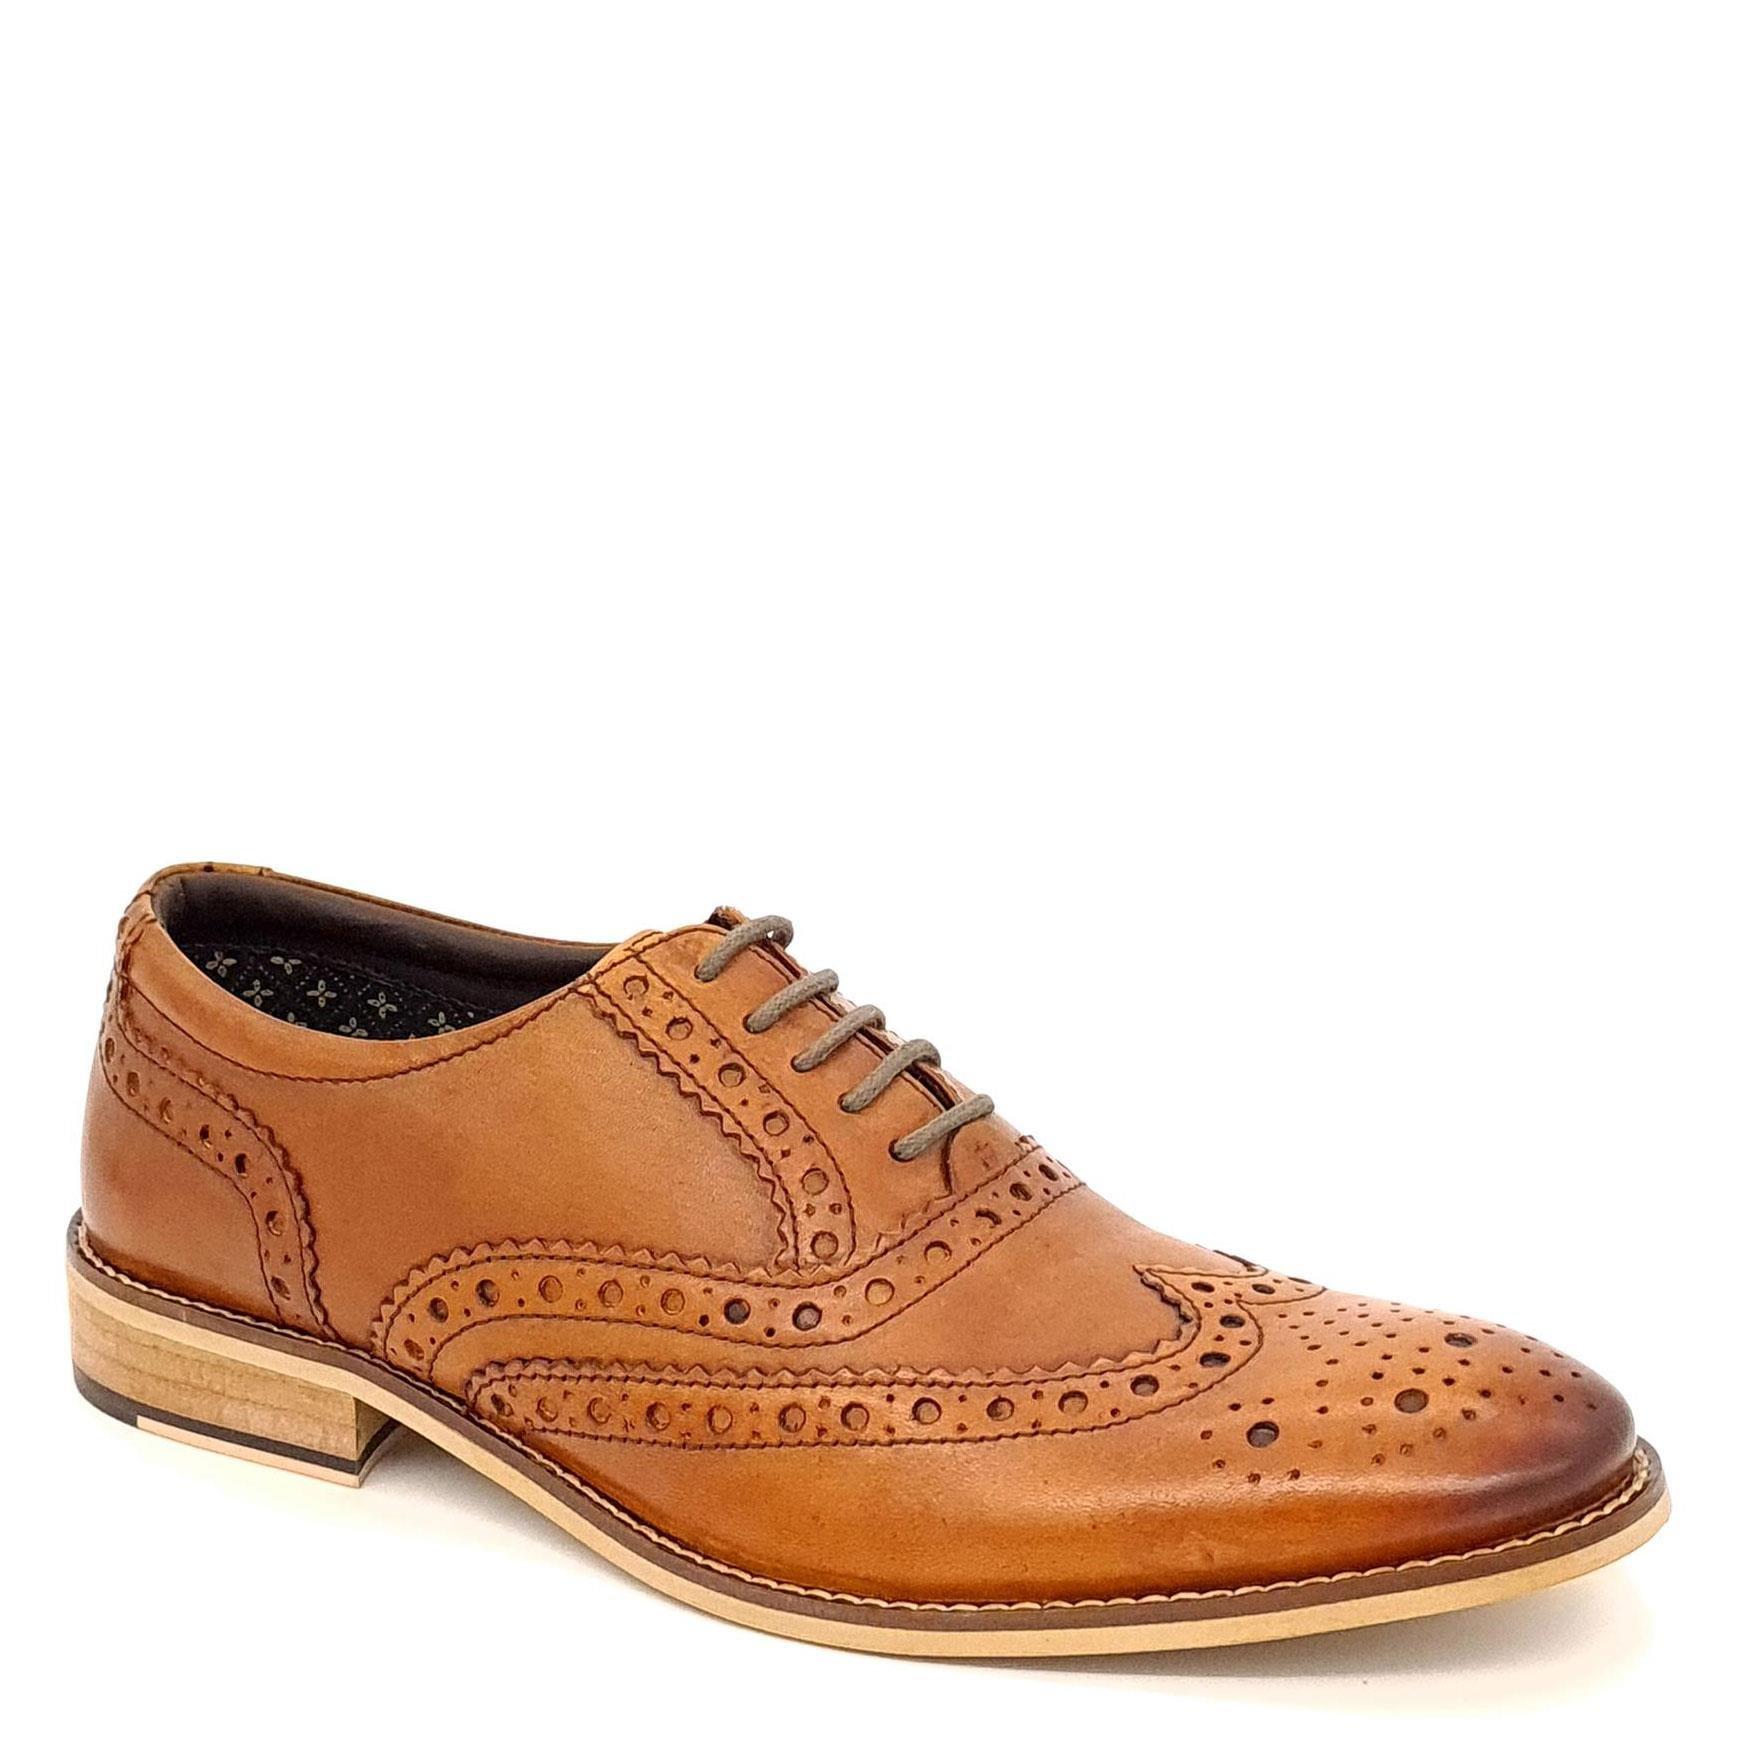 Кожаные туфли-броги Enfield Frank James, коричневый кожаные формальные туфли броги harlow с острым носком frank james коричневый